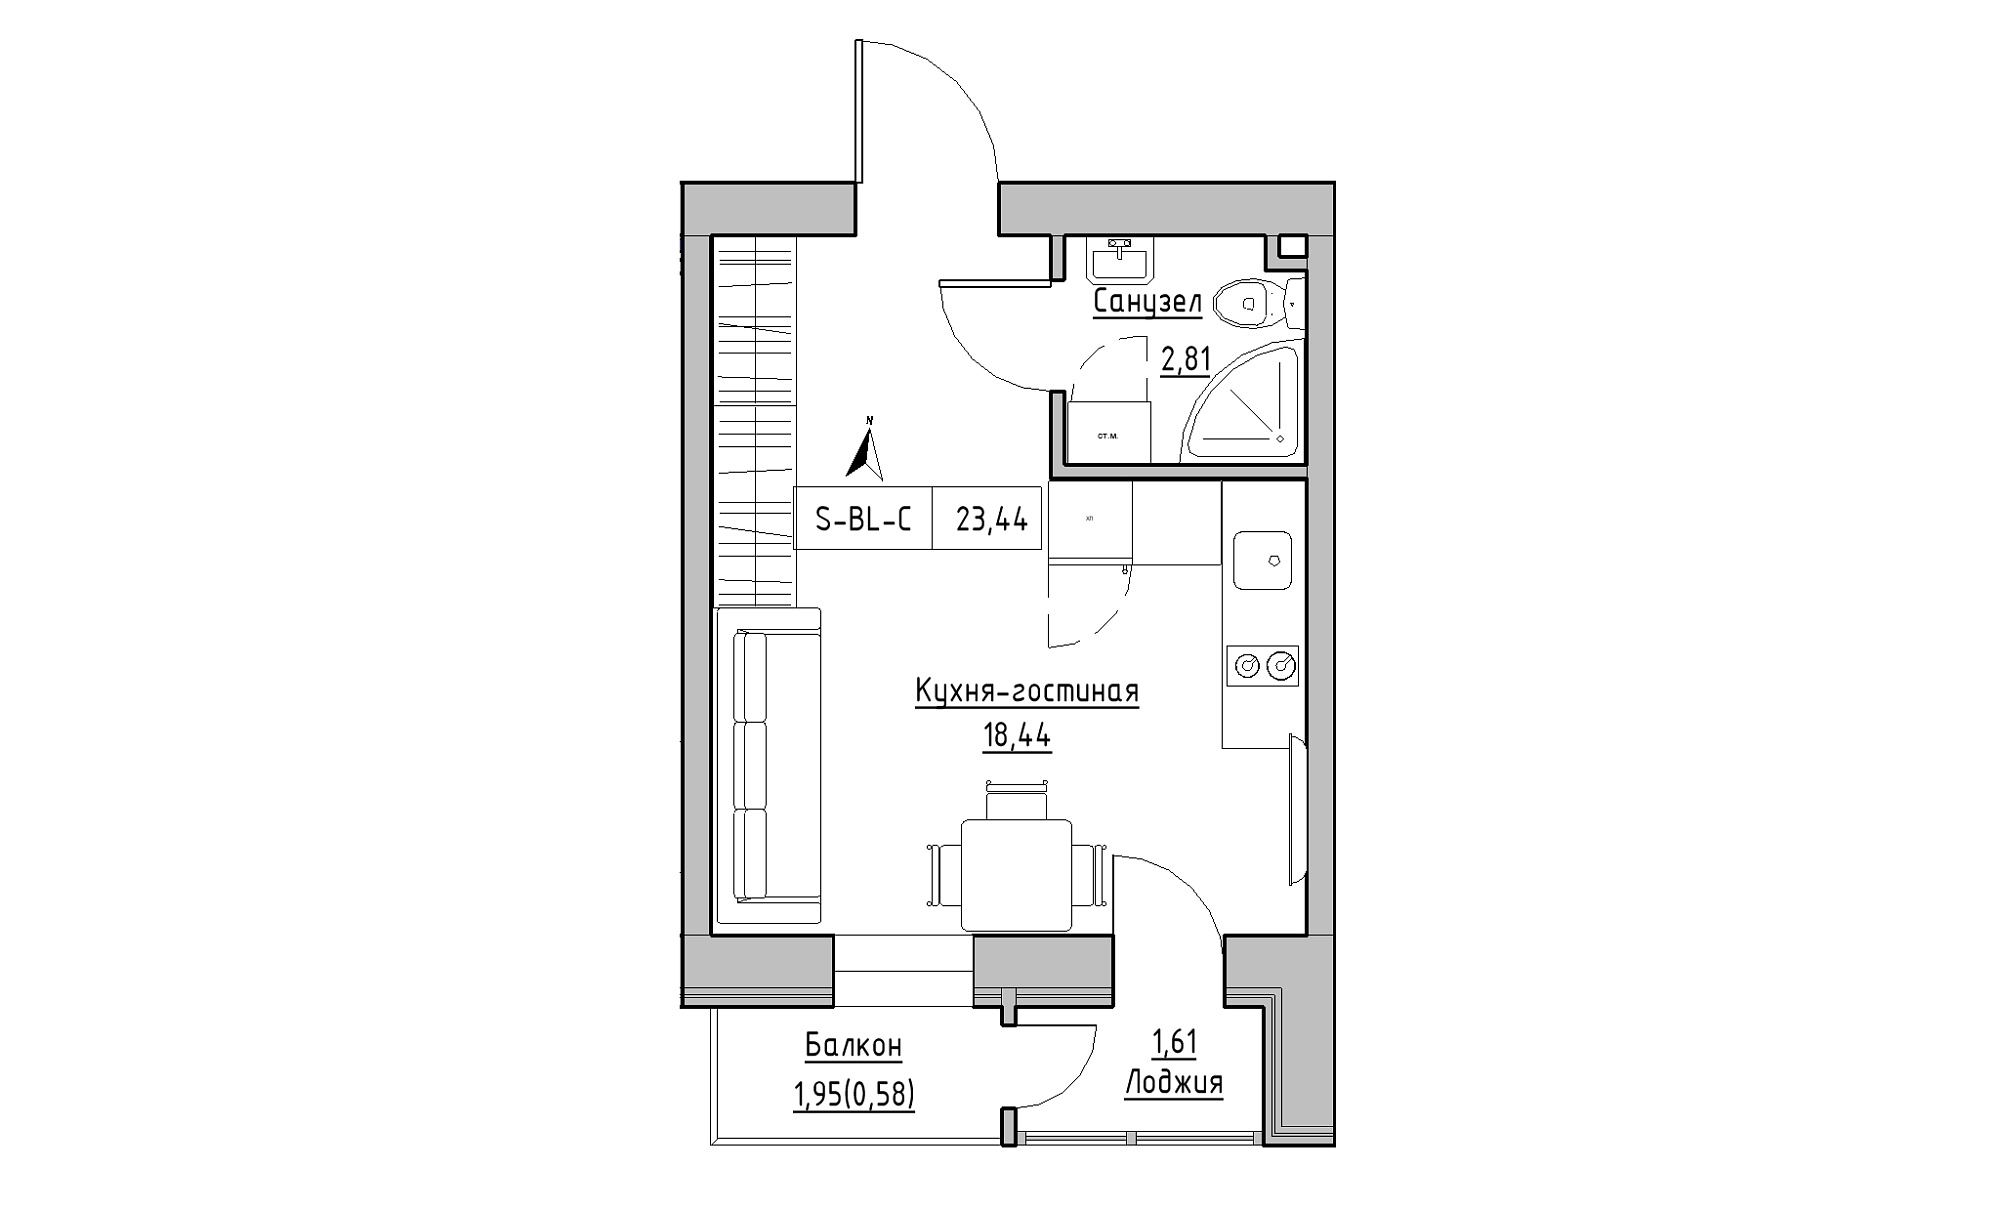 Планування Smart-квартира площею 23.44м2, KS-023-02/0013.